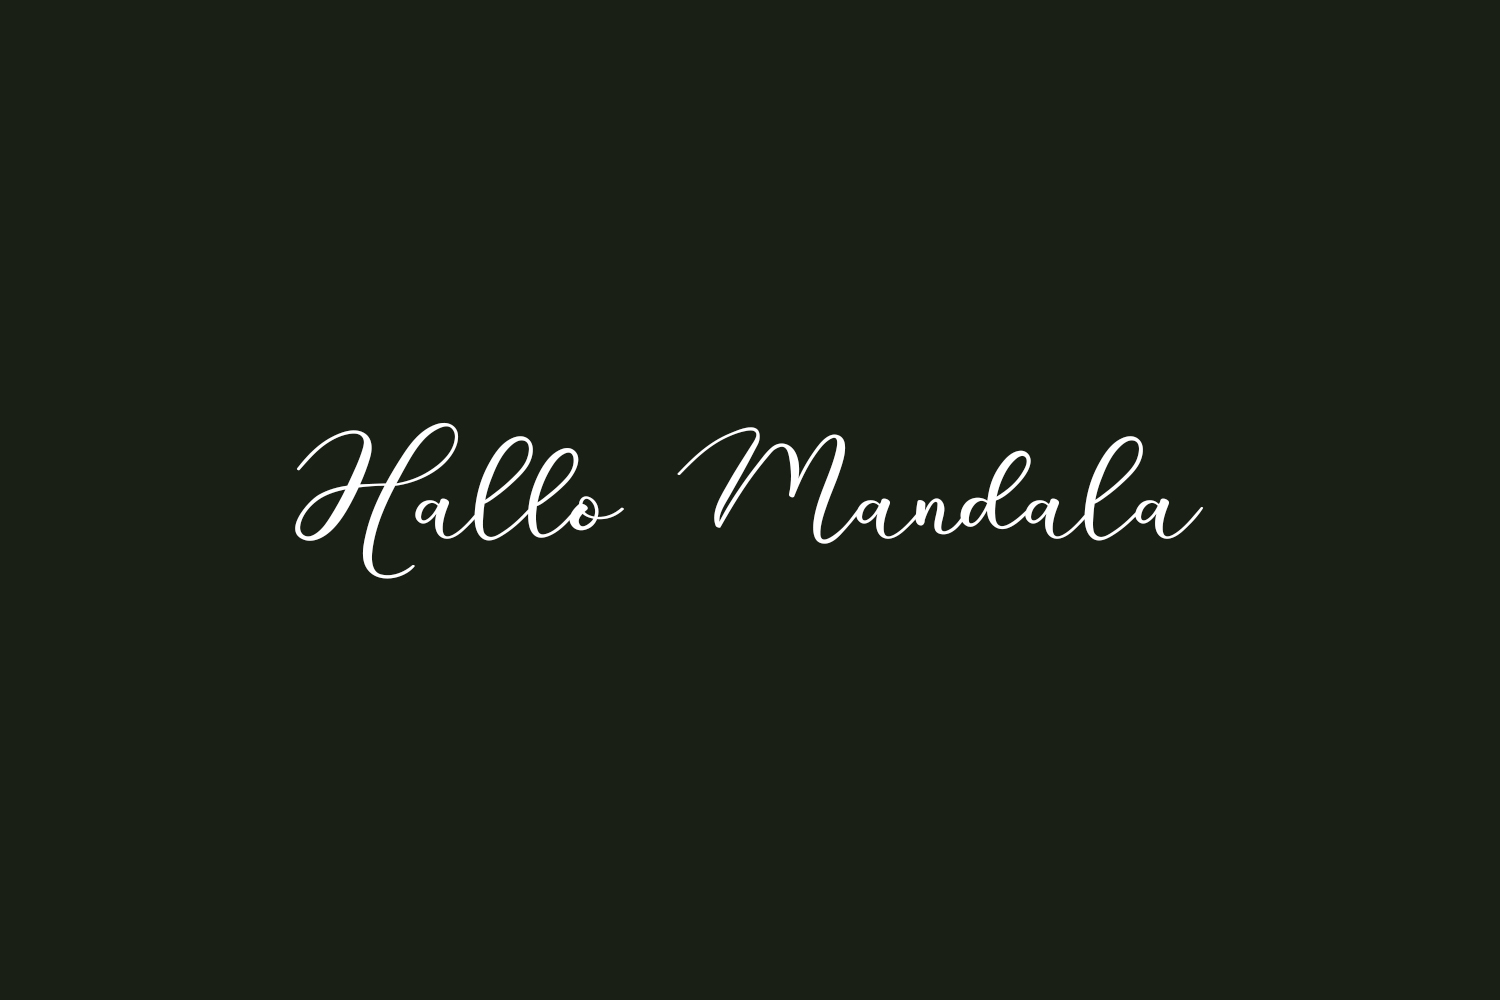 Hallo Mandala Free Font